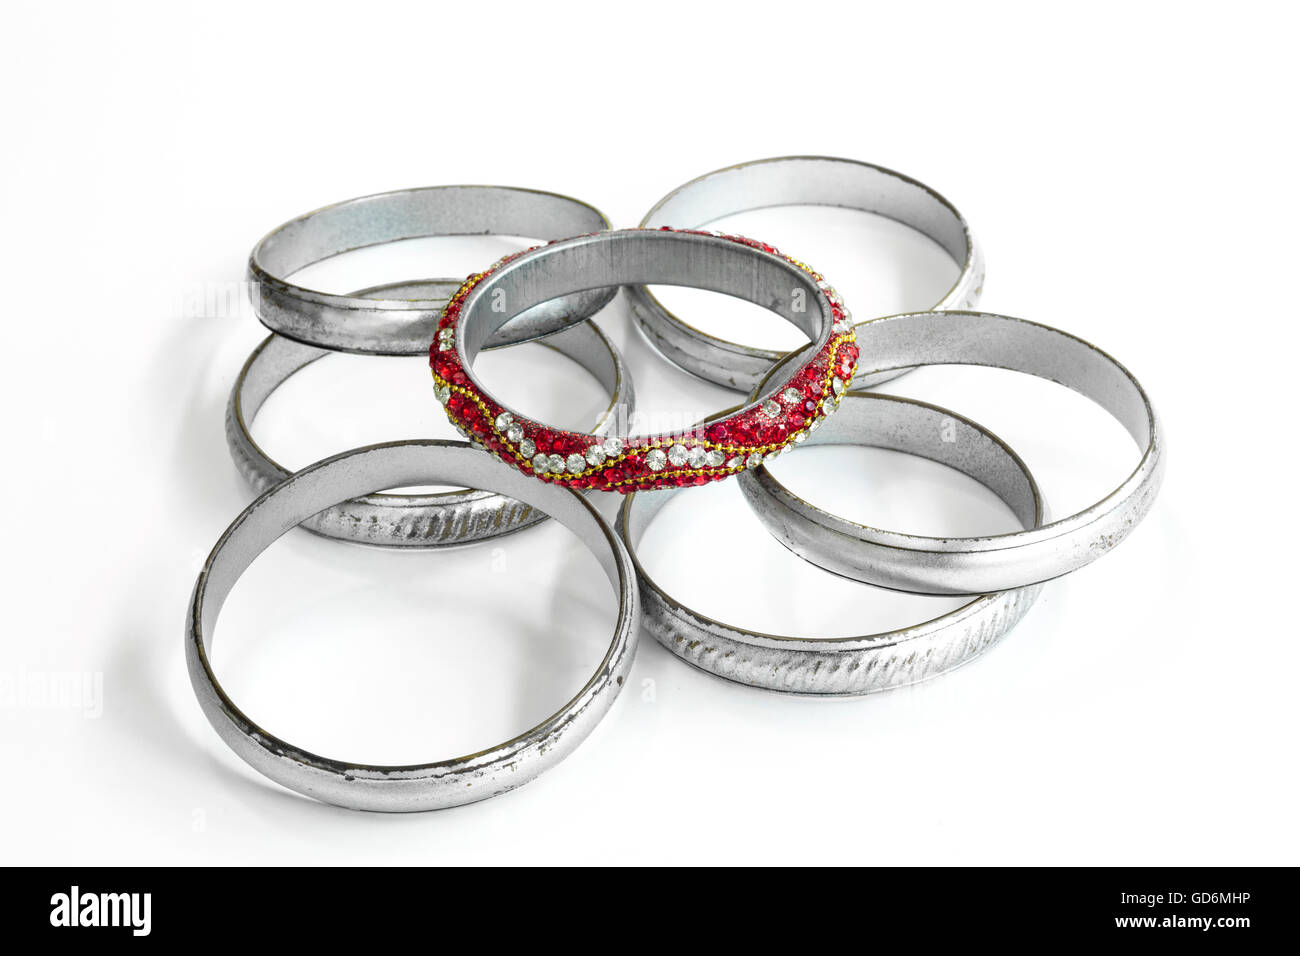 Gruppo di bracciali in argento e una molto diversa composta dai colori rosso e gemme, in contrasto con gli altri Foto Stock